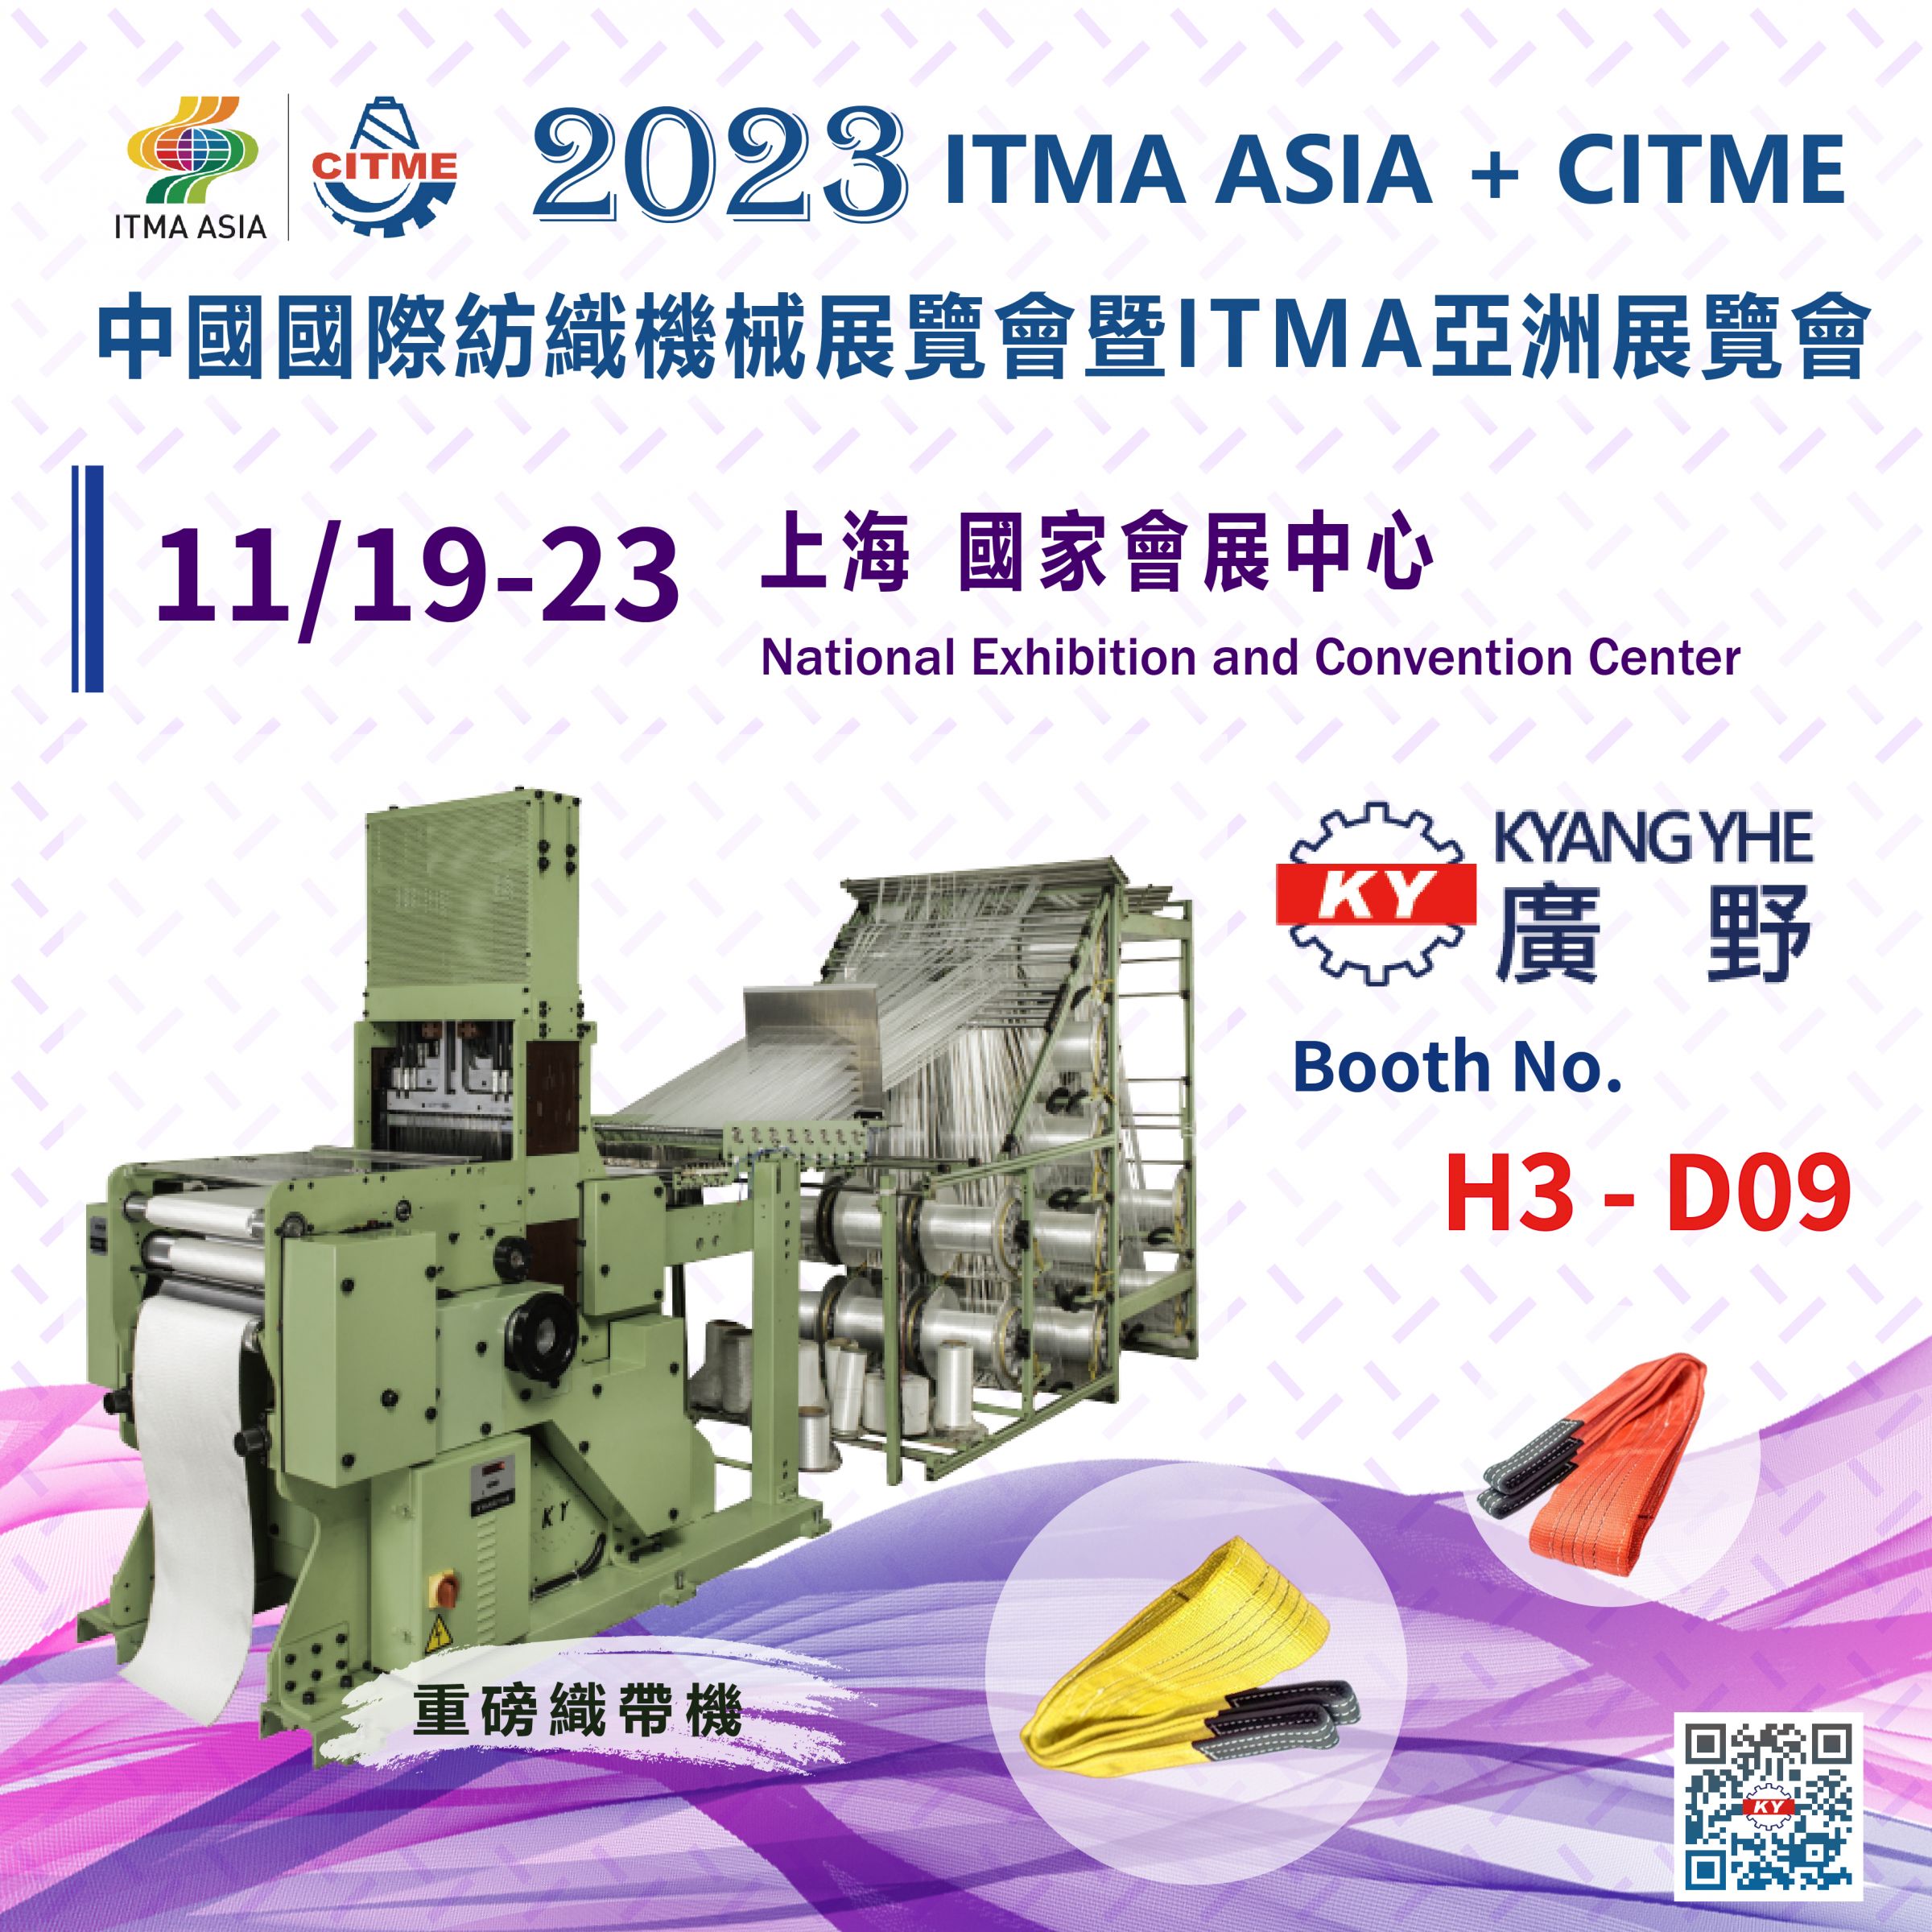 معرض ITMA ASIA + CITME لعام 2023 في شنغهاي، الصين